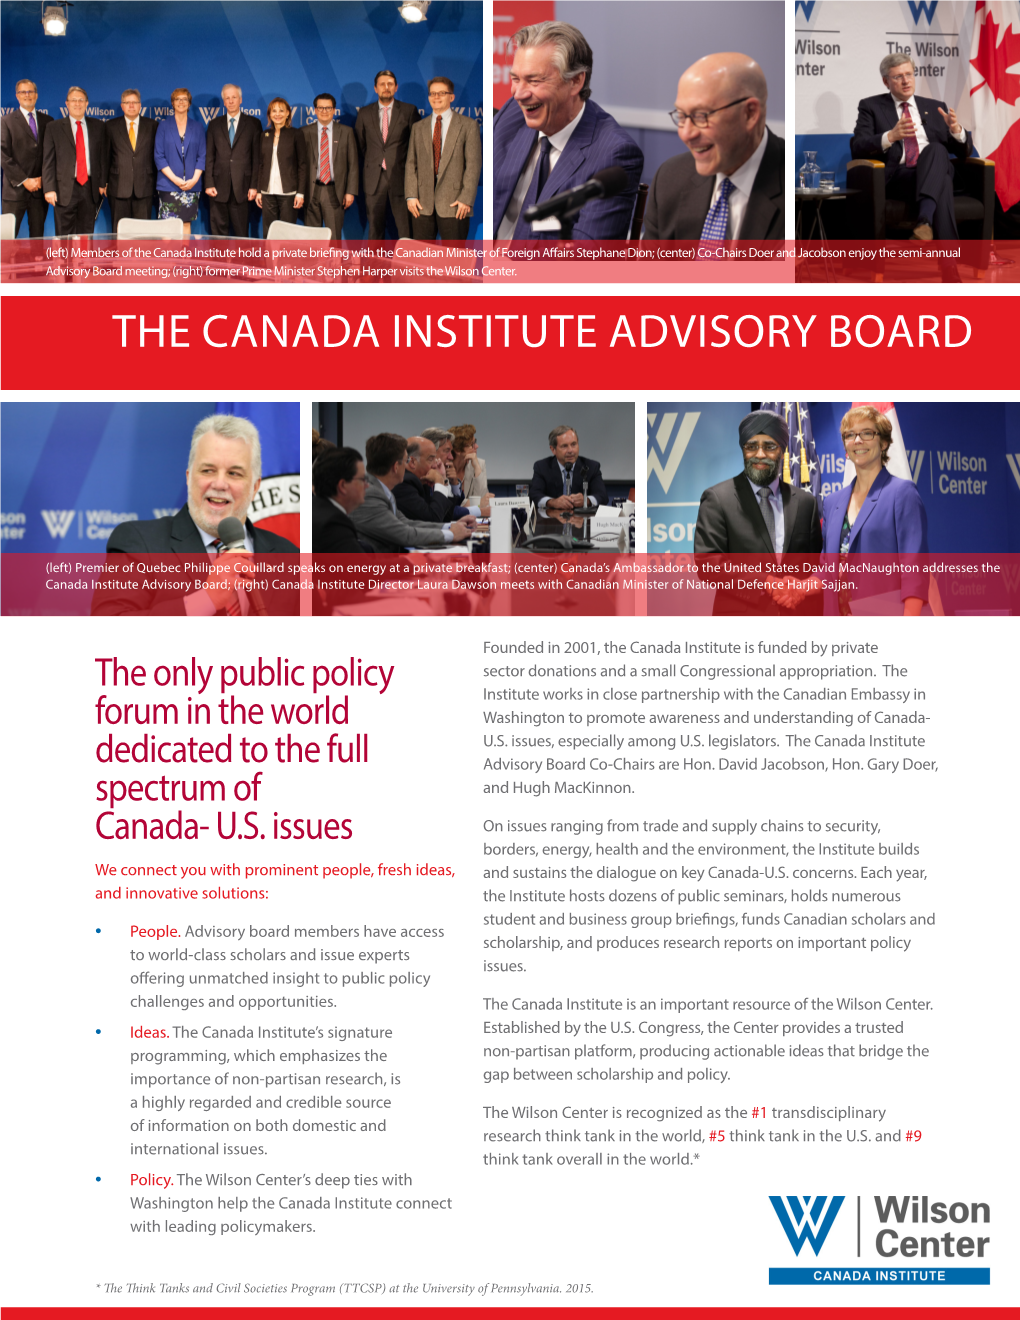 The Canada Institute Advisory Board